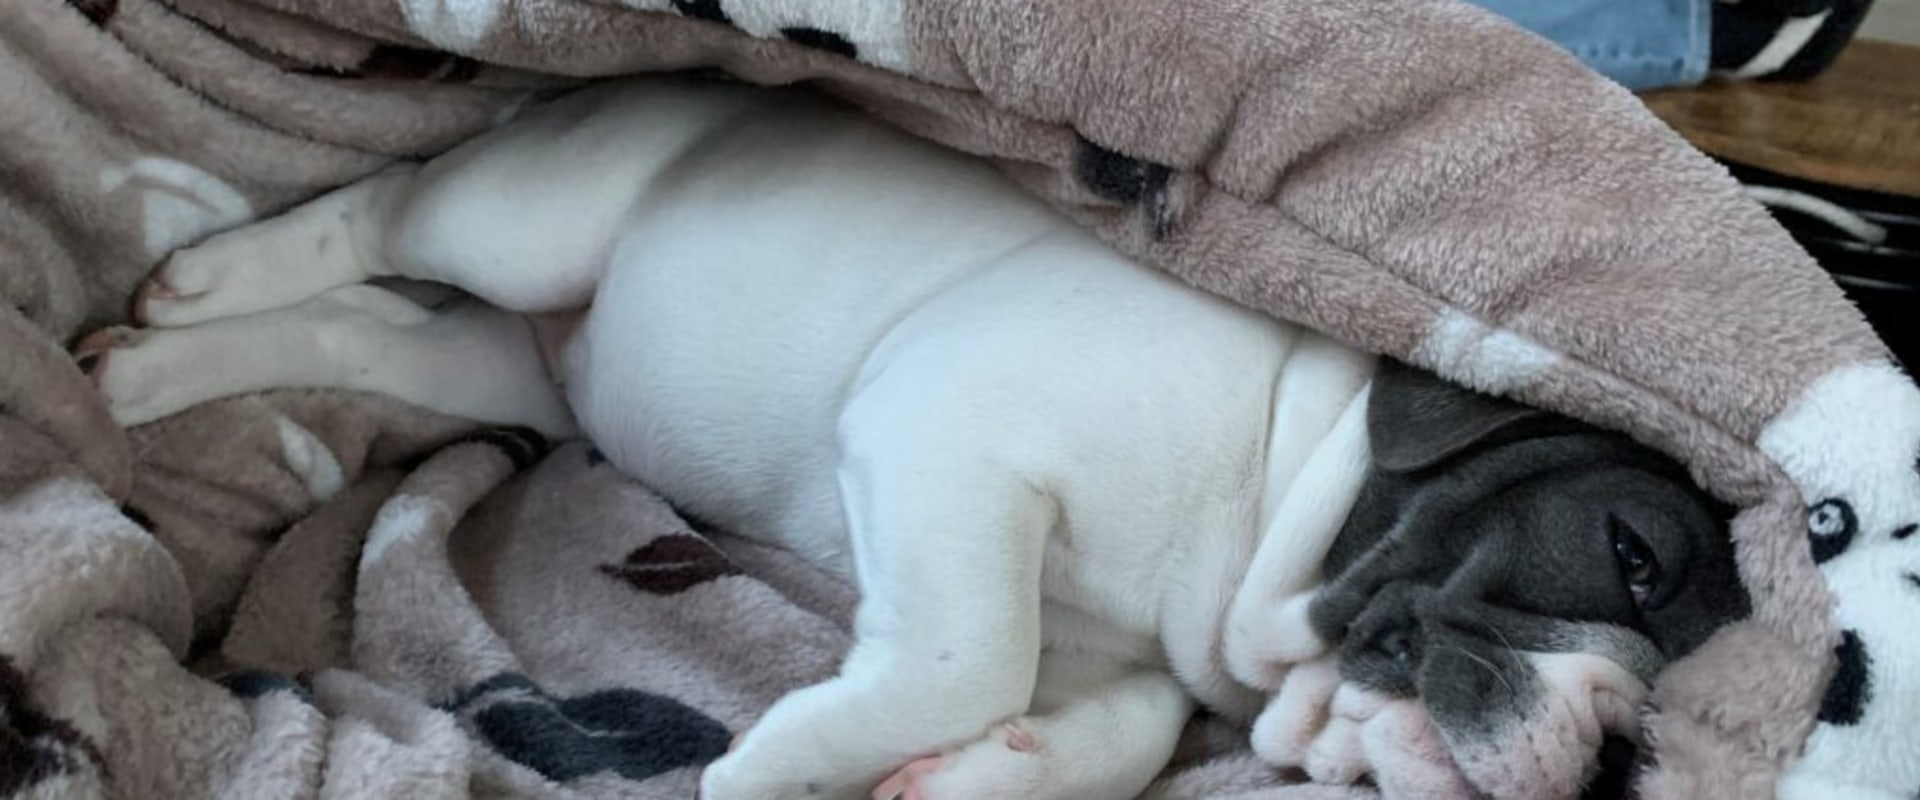 Houden honden van dekens tijdens het slapen?